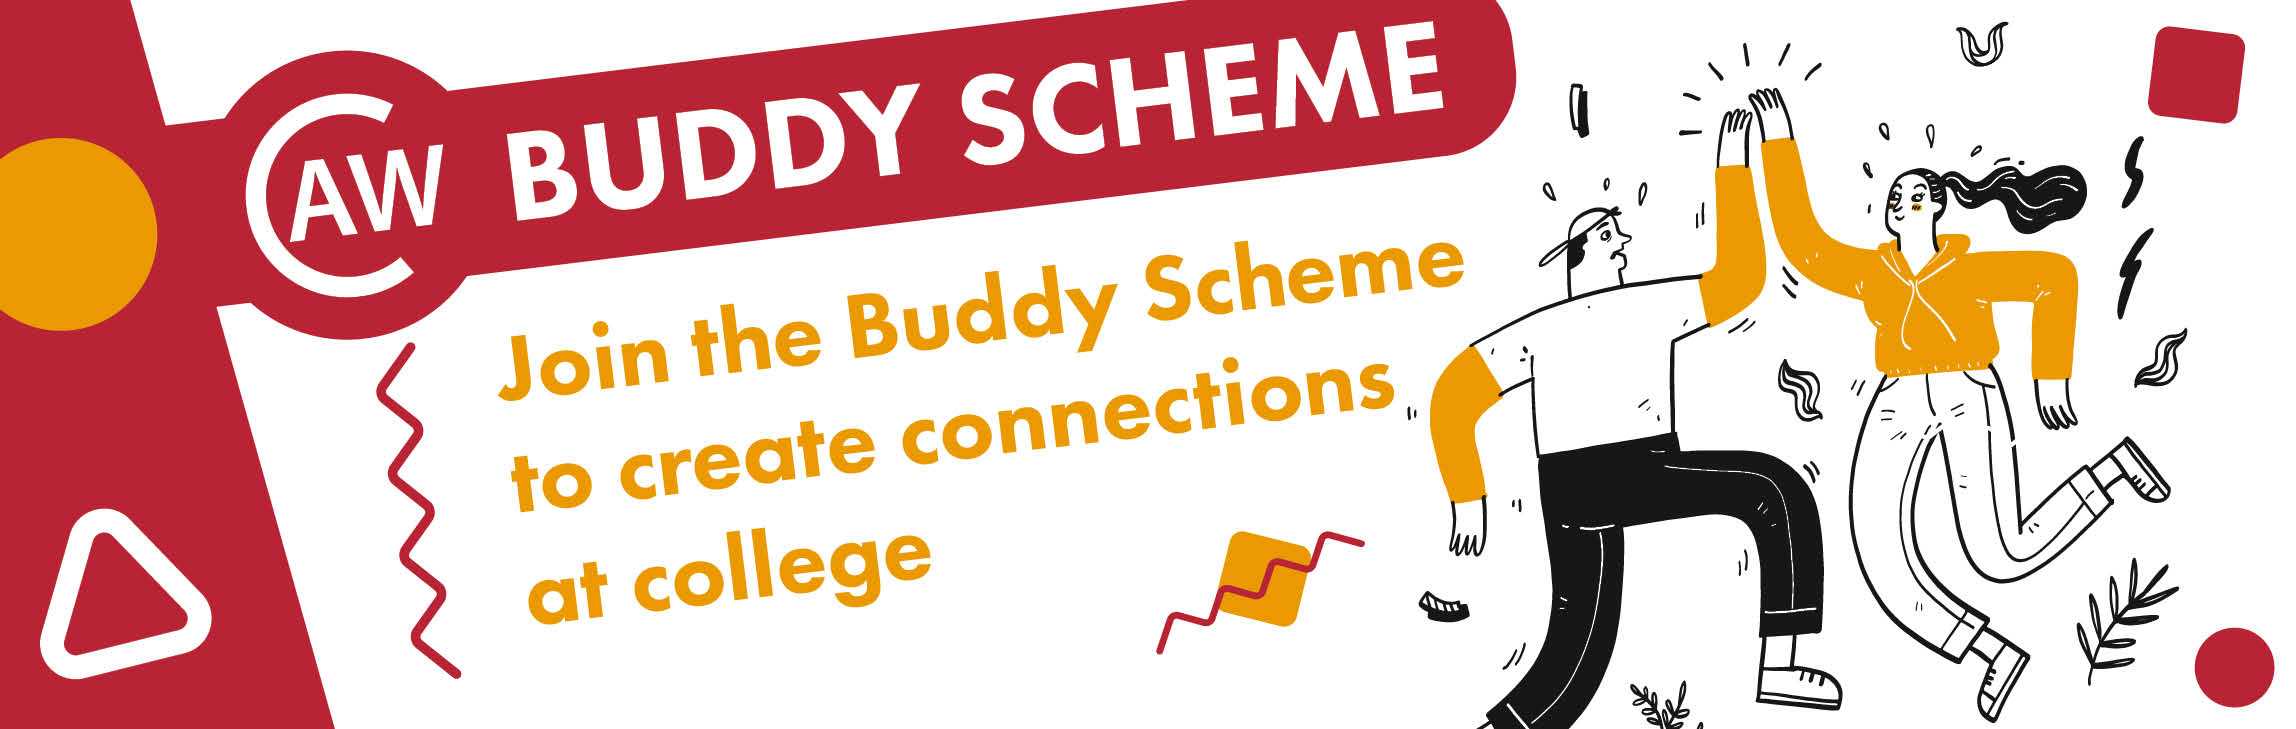 CAW Buddy scheme - join!